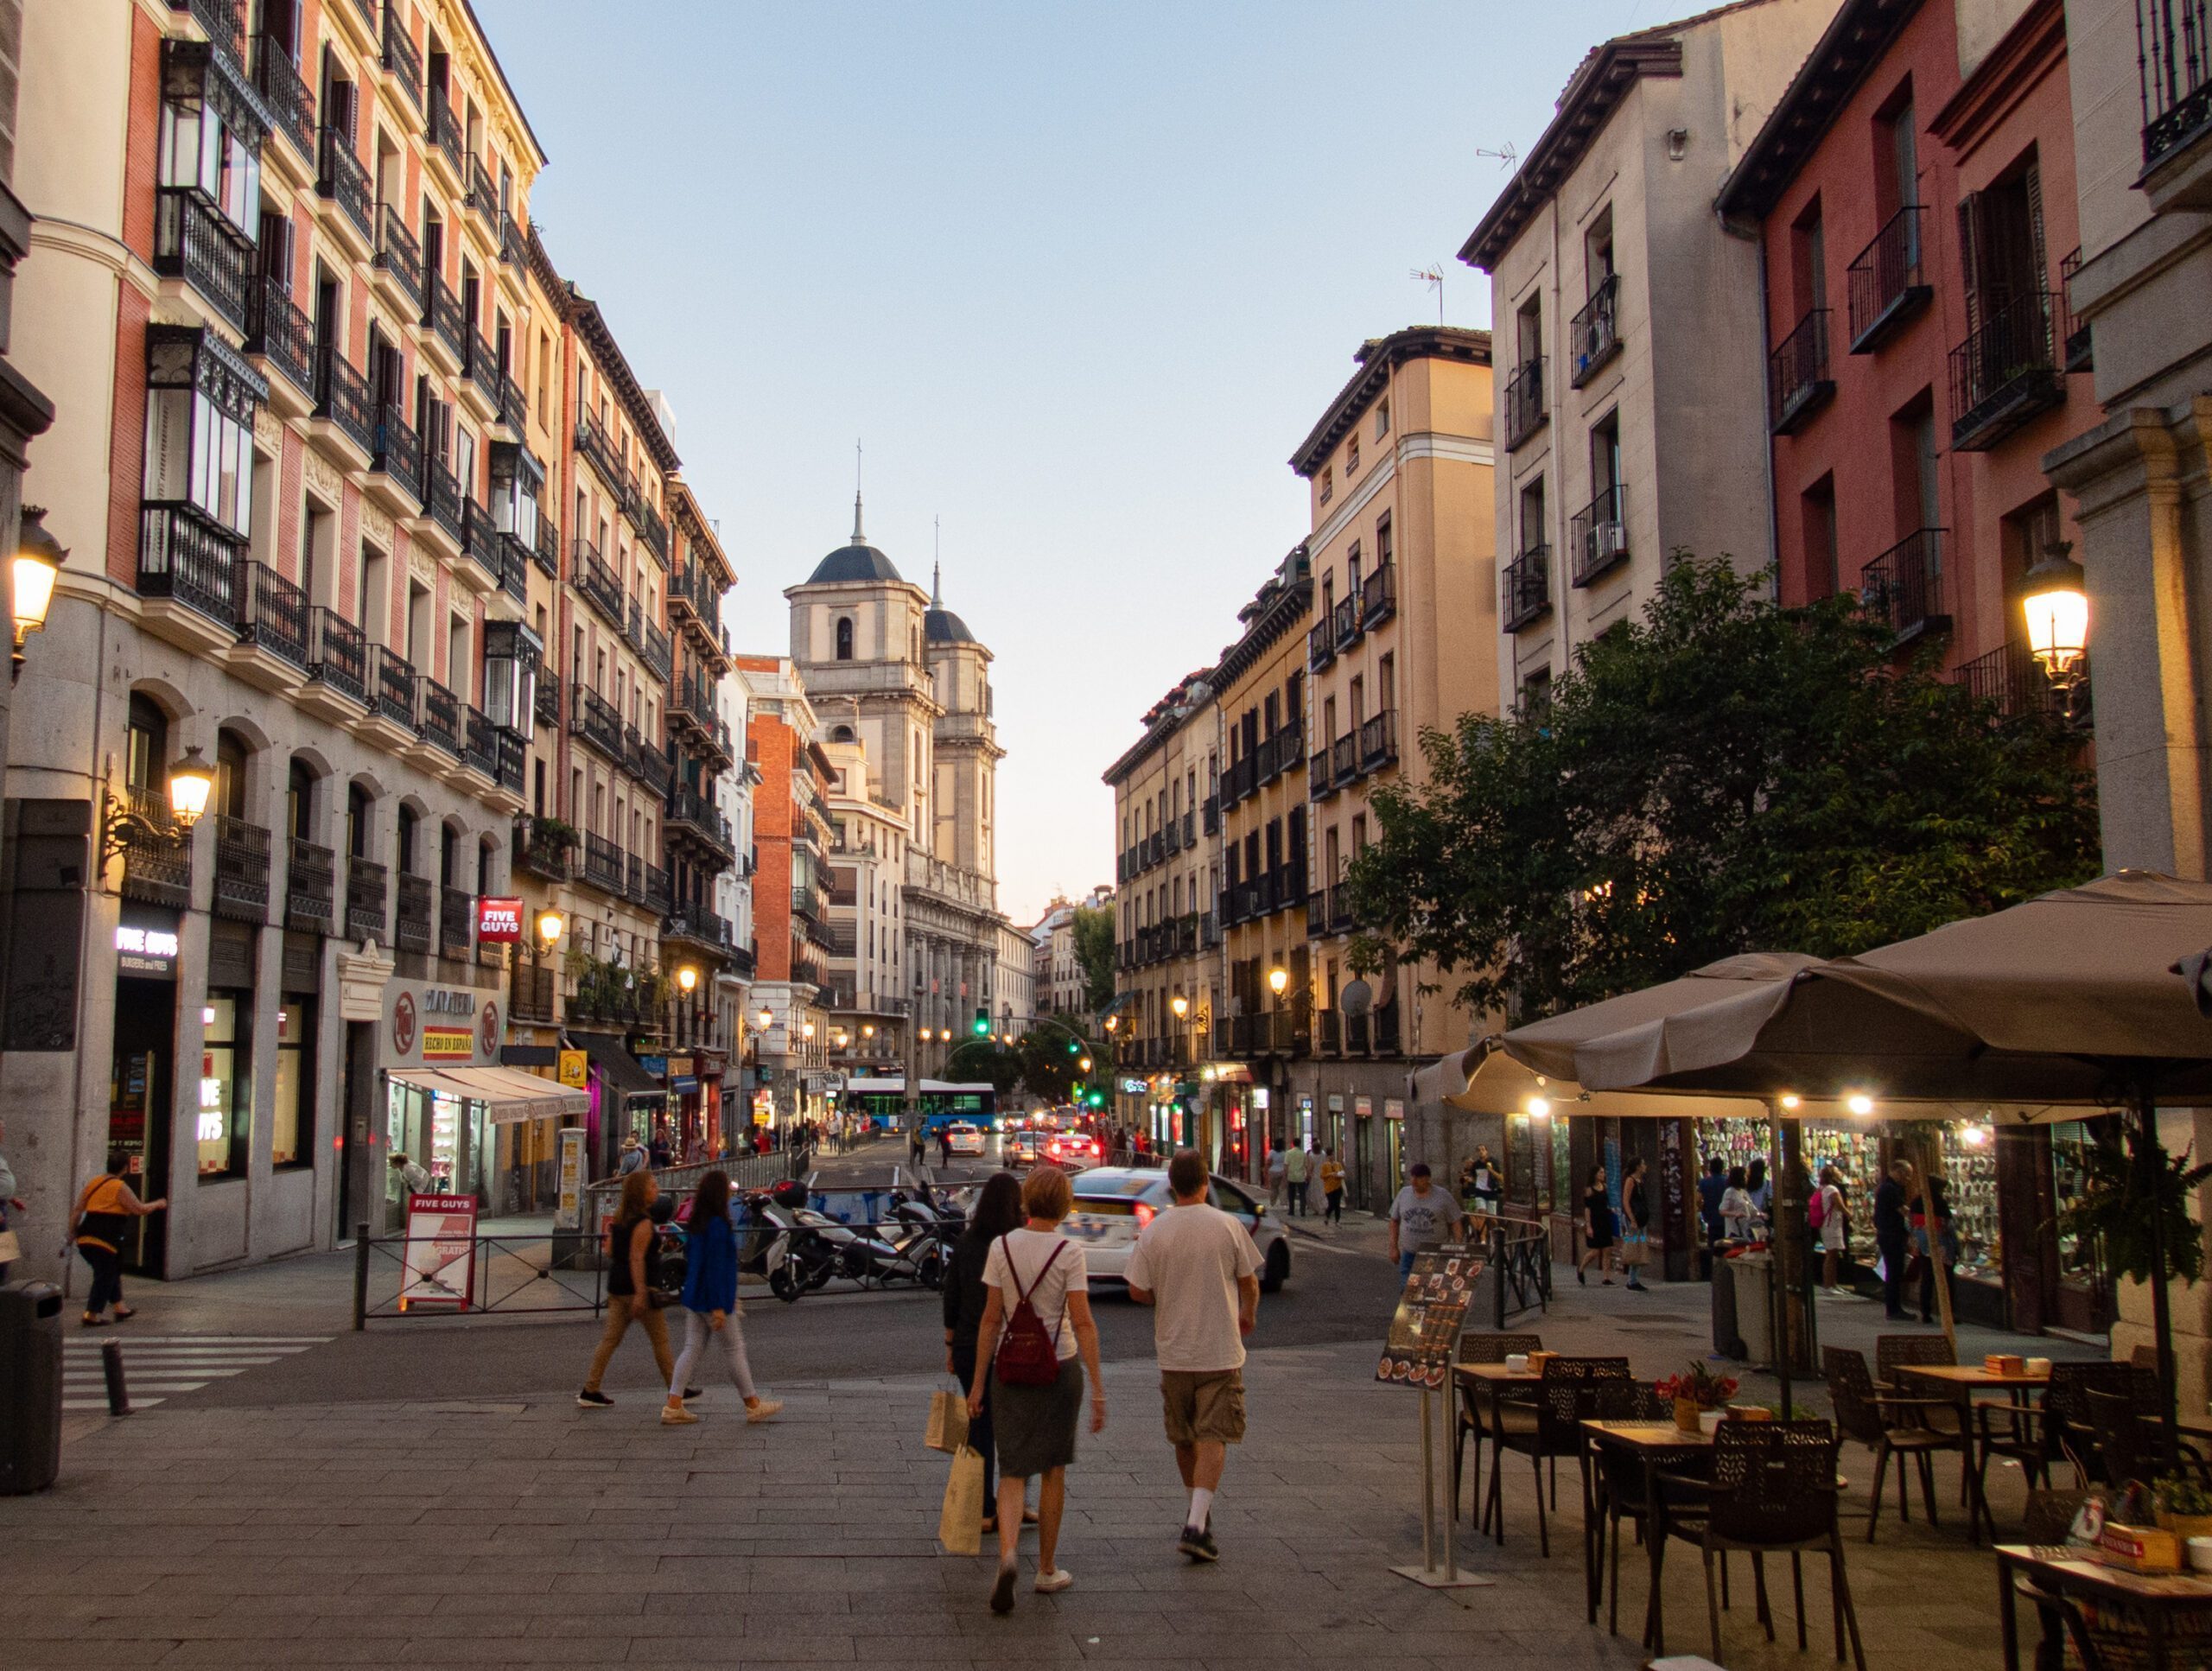 Una via dello shopping a Madrid chiamata Calle de Toledo